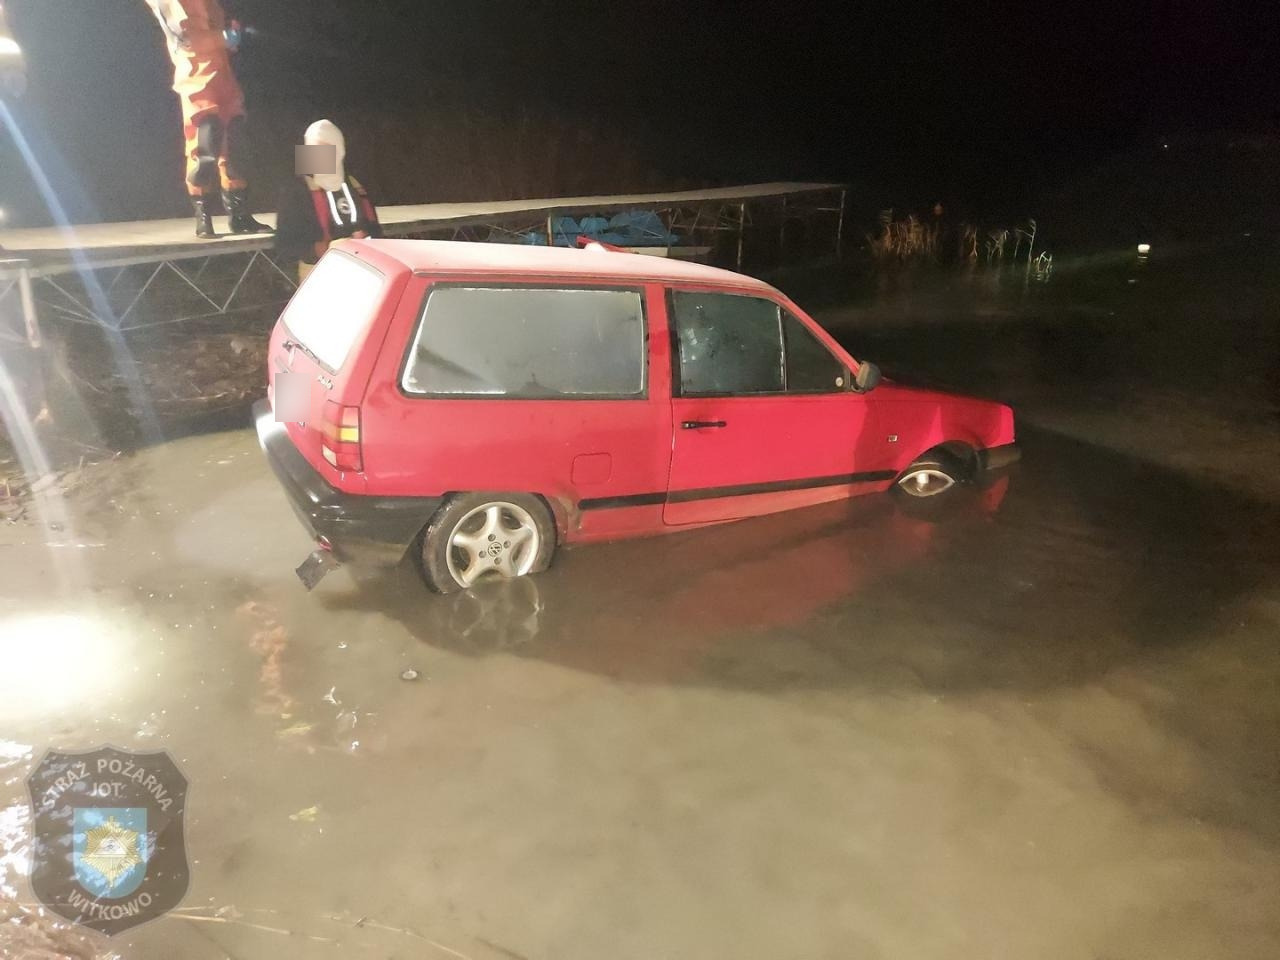 W jeziorze znaleziono samochód. Co stało się z kierowcą?